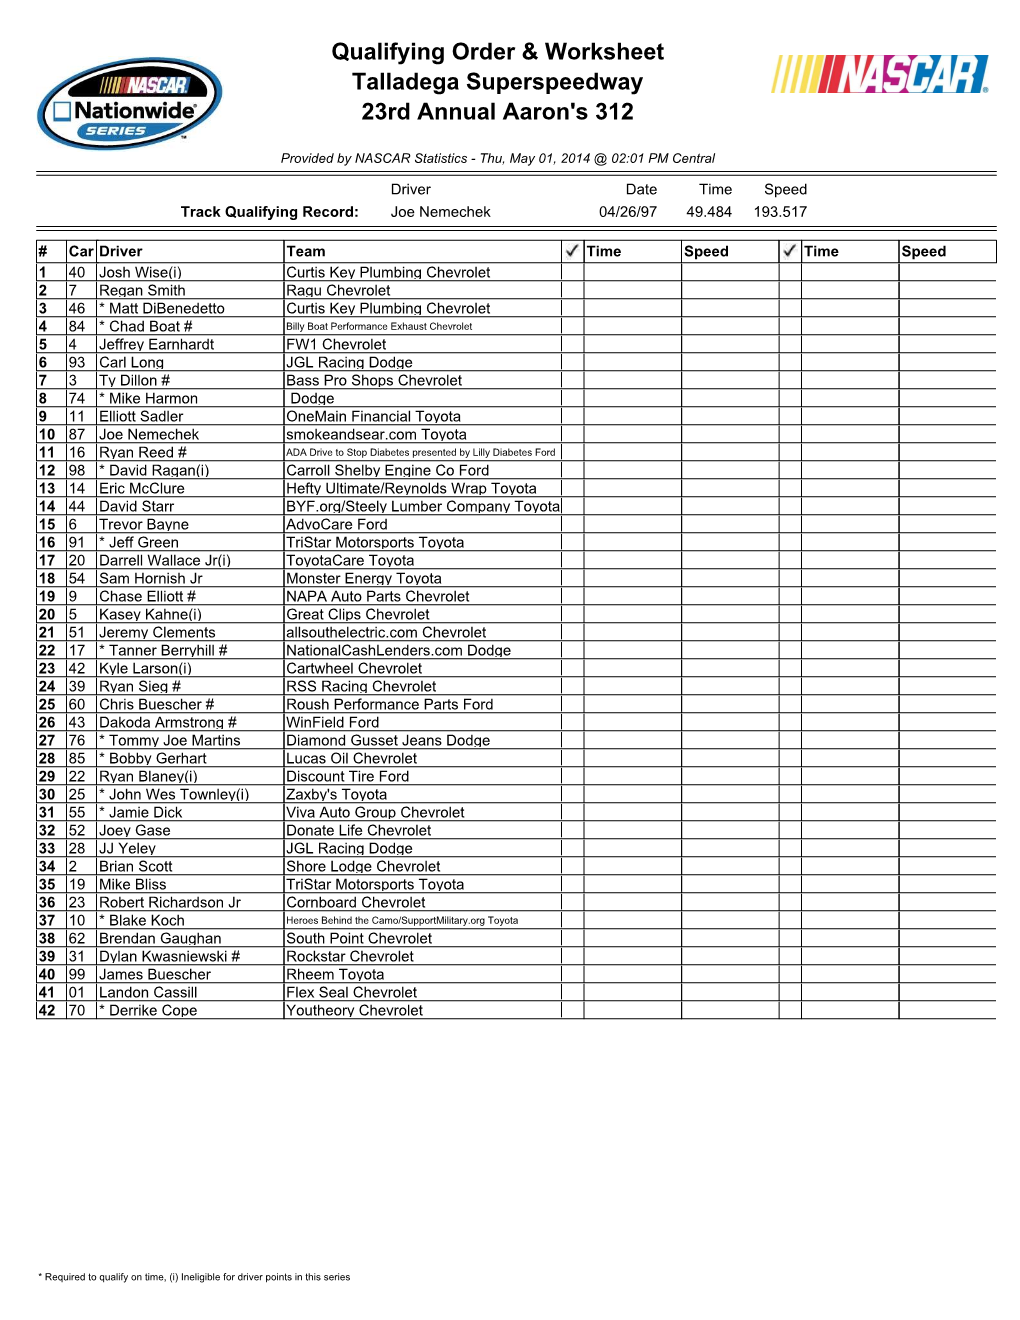 Qualifying Order & Worksheet Talladega Superspeedway 23Rd